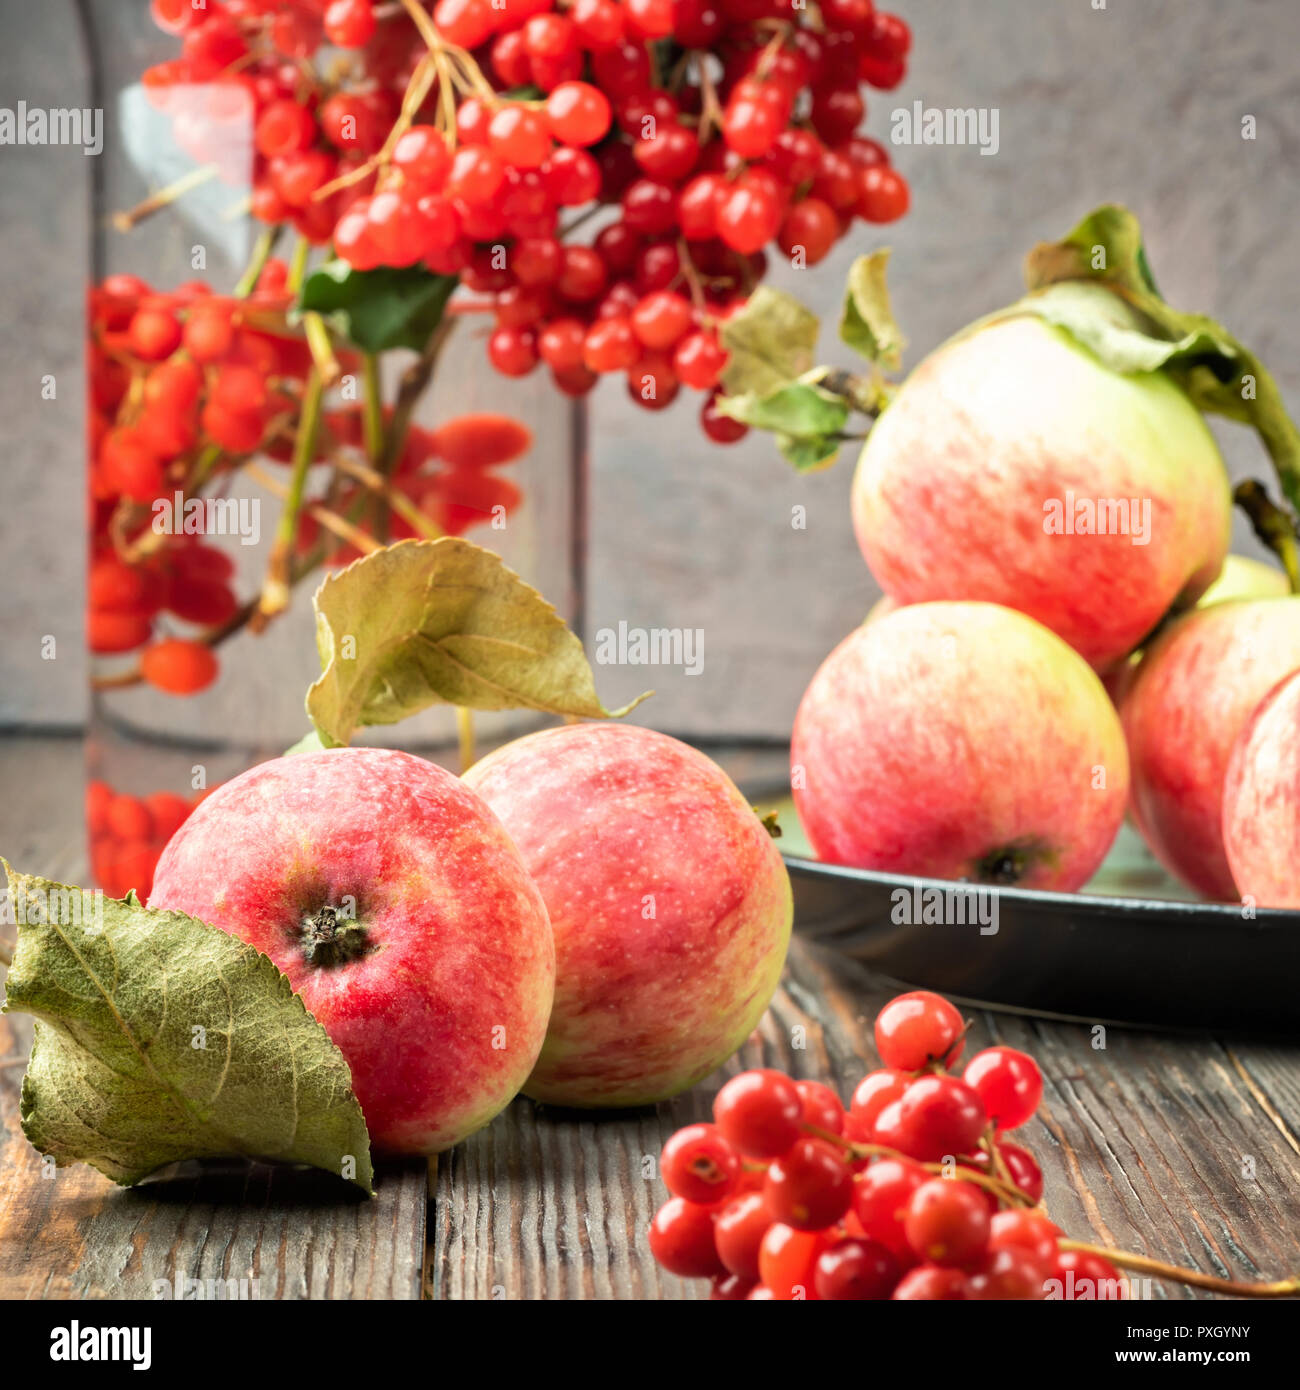 Noch immer leben Beeren eines Viburnum und Garten saisonal Äpfel in Platten auf hölzernen Tisch. Herbst Konzept Ernährung, Landwirtschaft, Ernte, Kochen Stockfoto